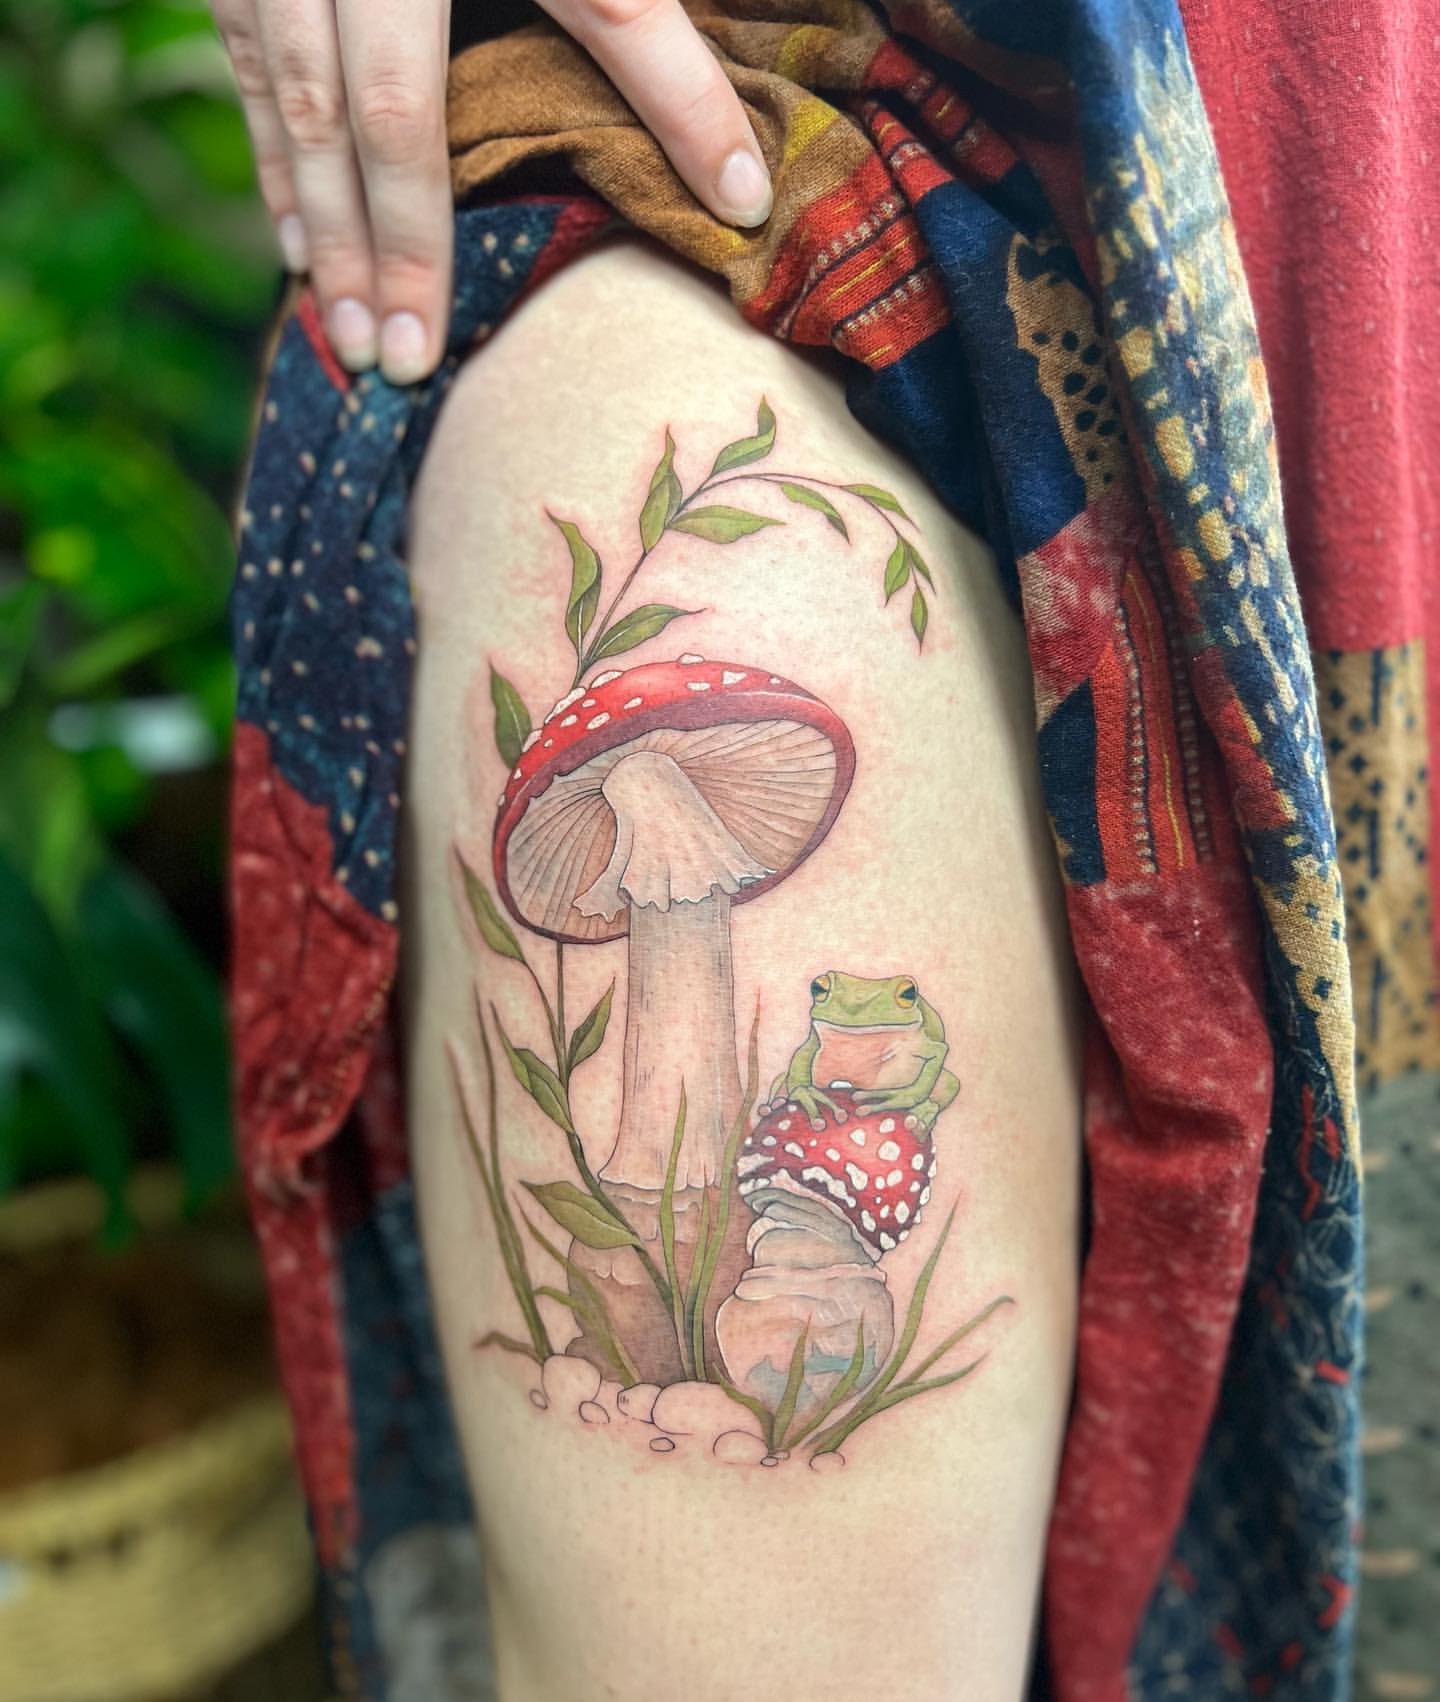 My new mushroom fairy tattoo Im obsessed  rcottagecore